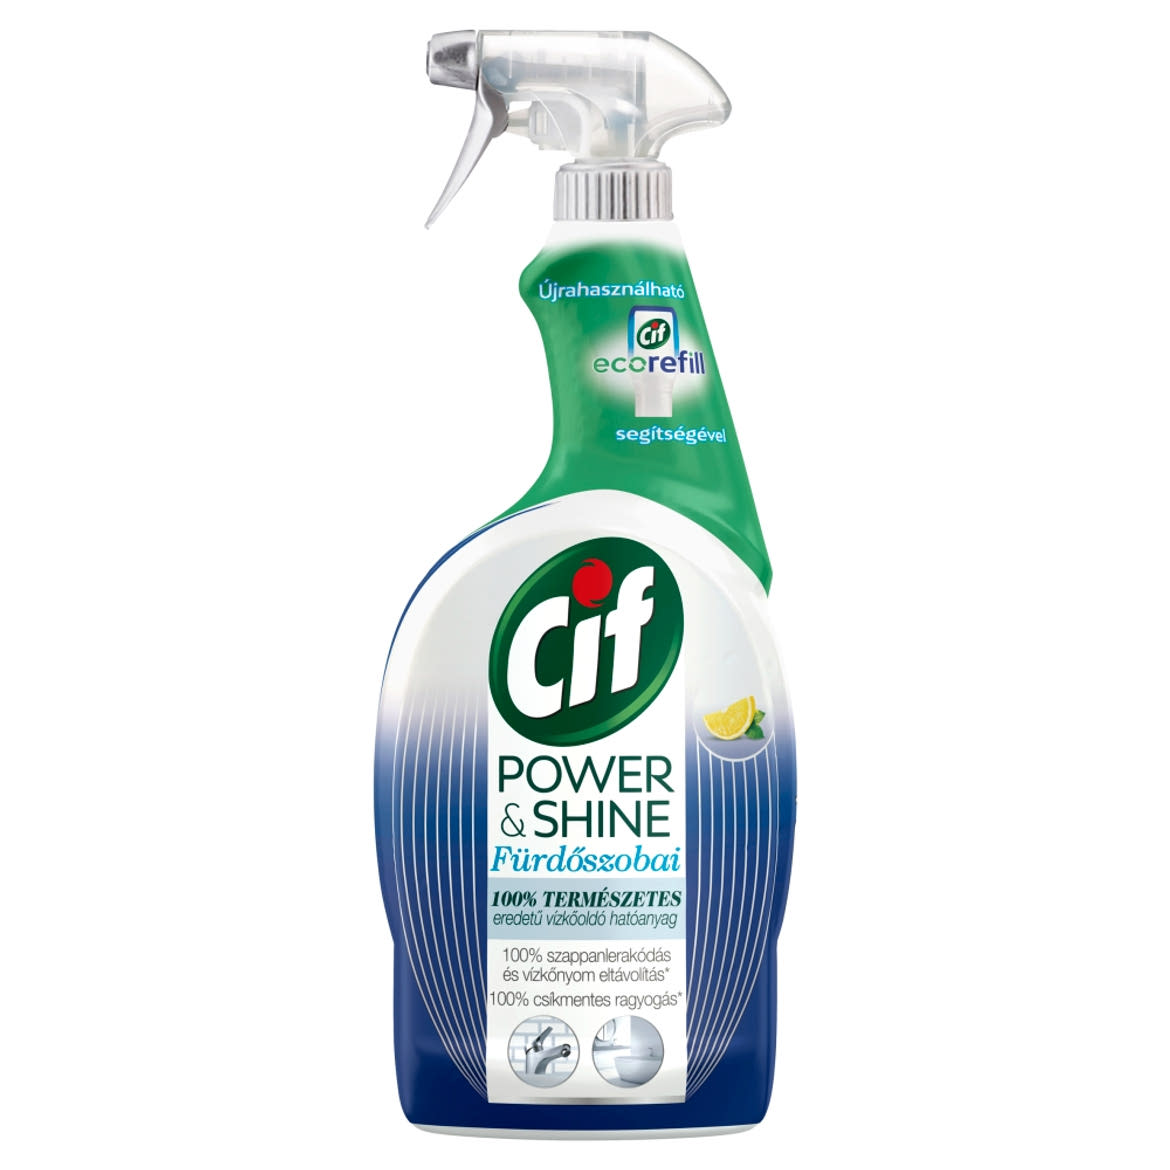 Cif Power & Shine fürdőszobai tisztító spray